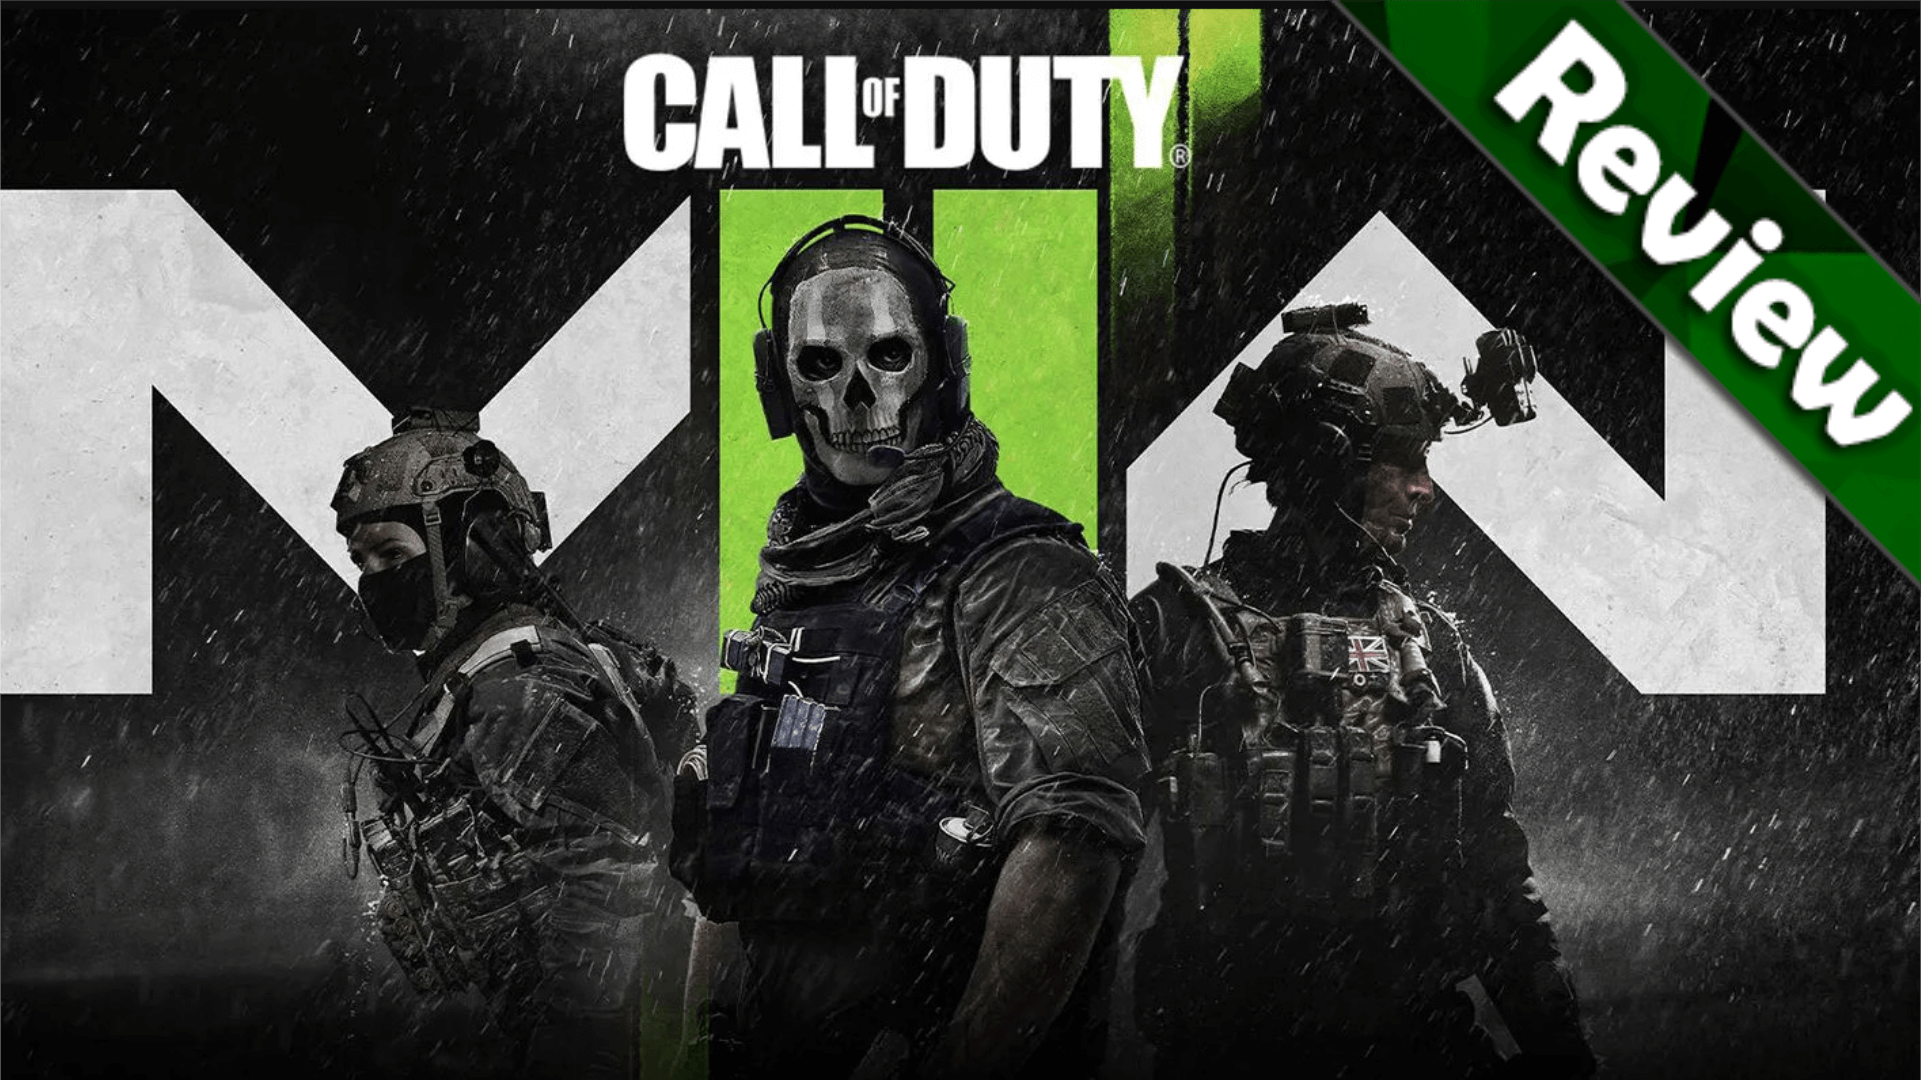 Call of Duty Modern Warfare II (2022) - Análise da campanha